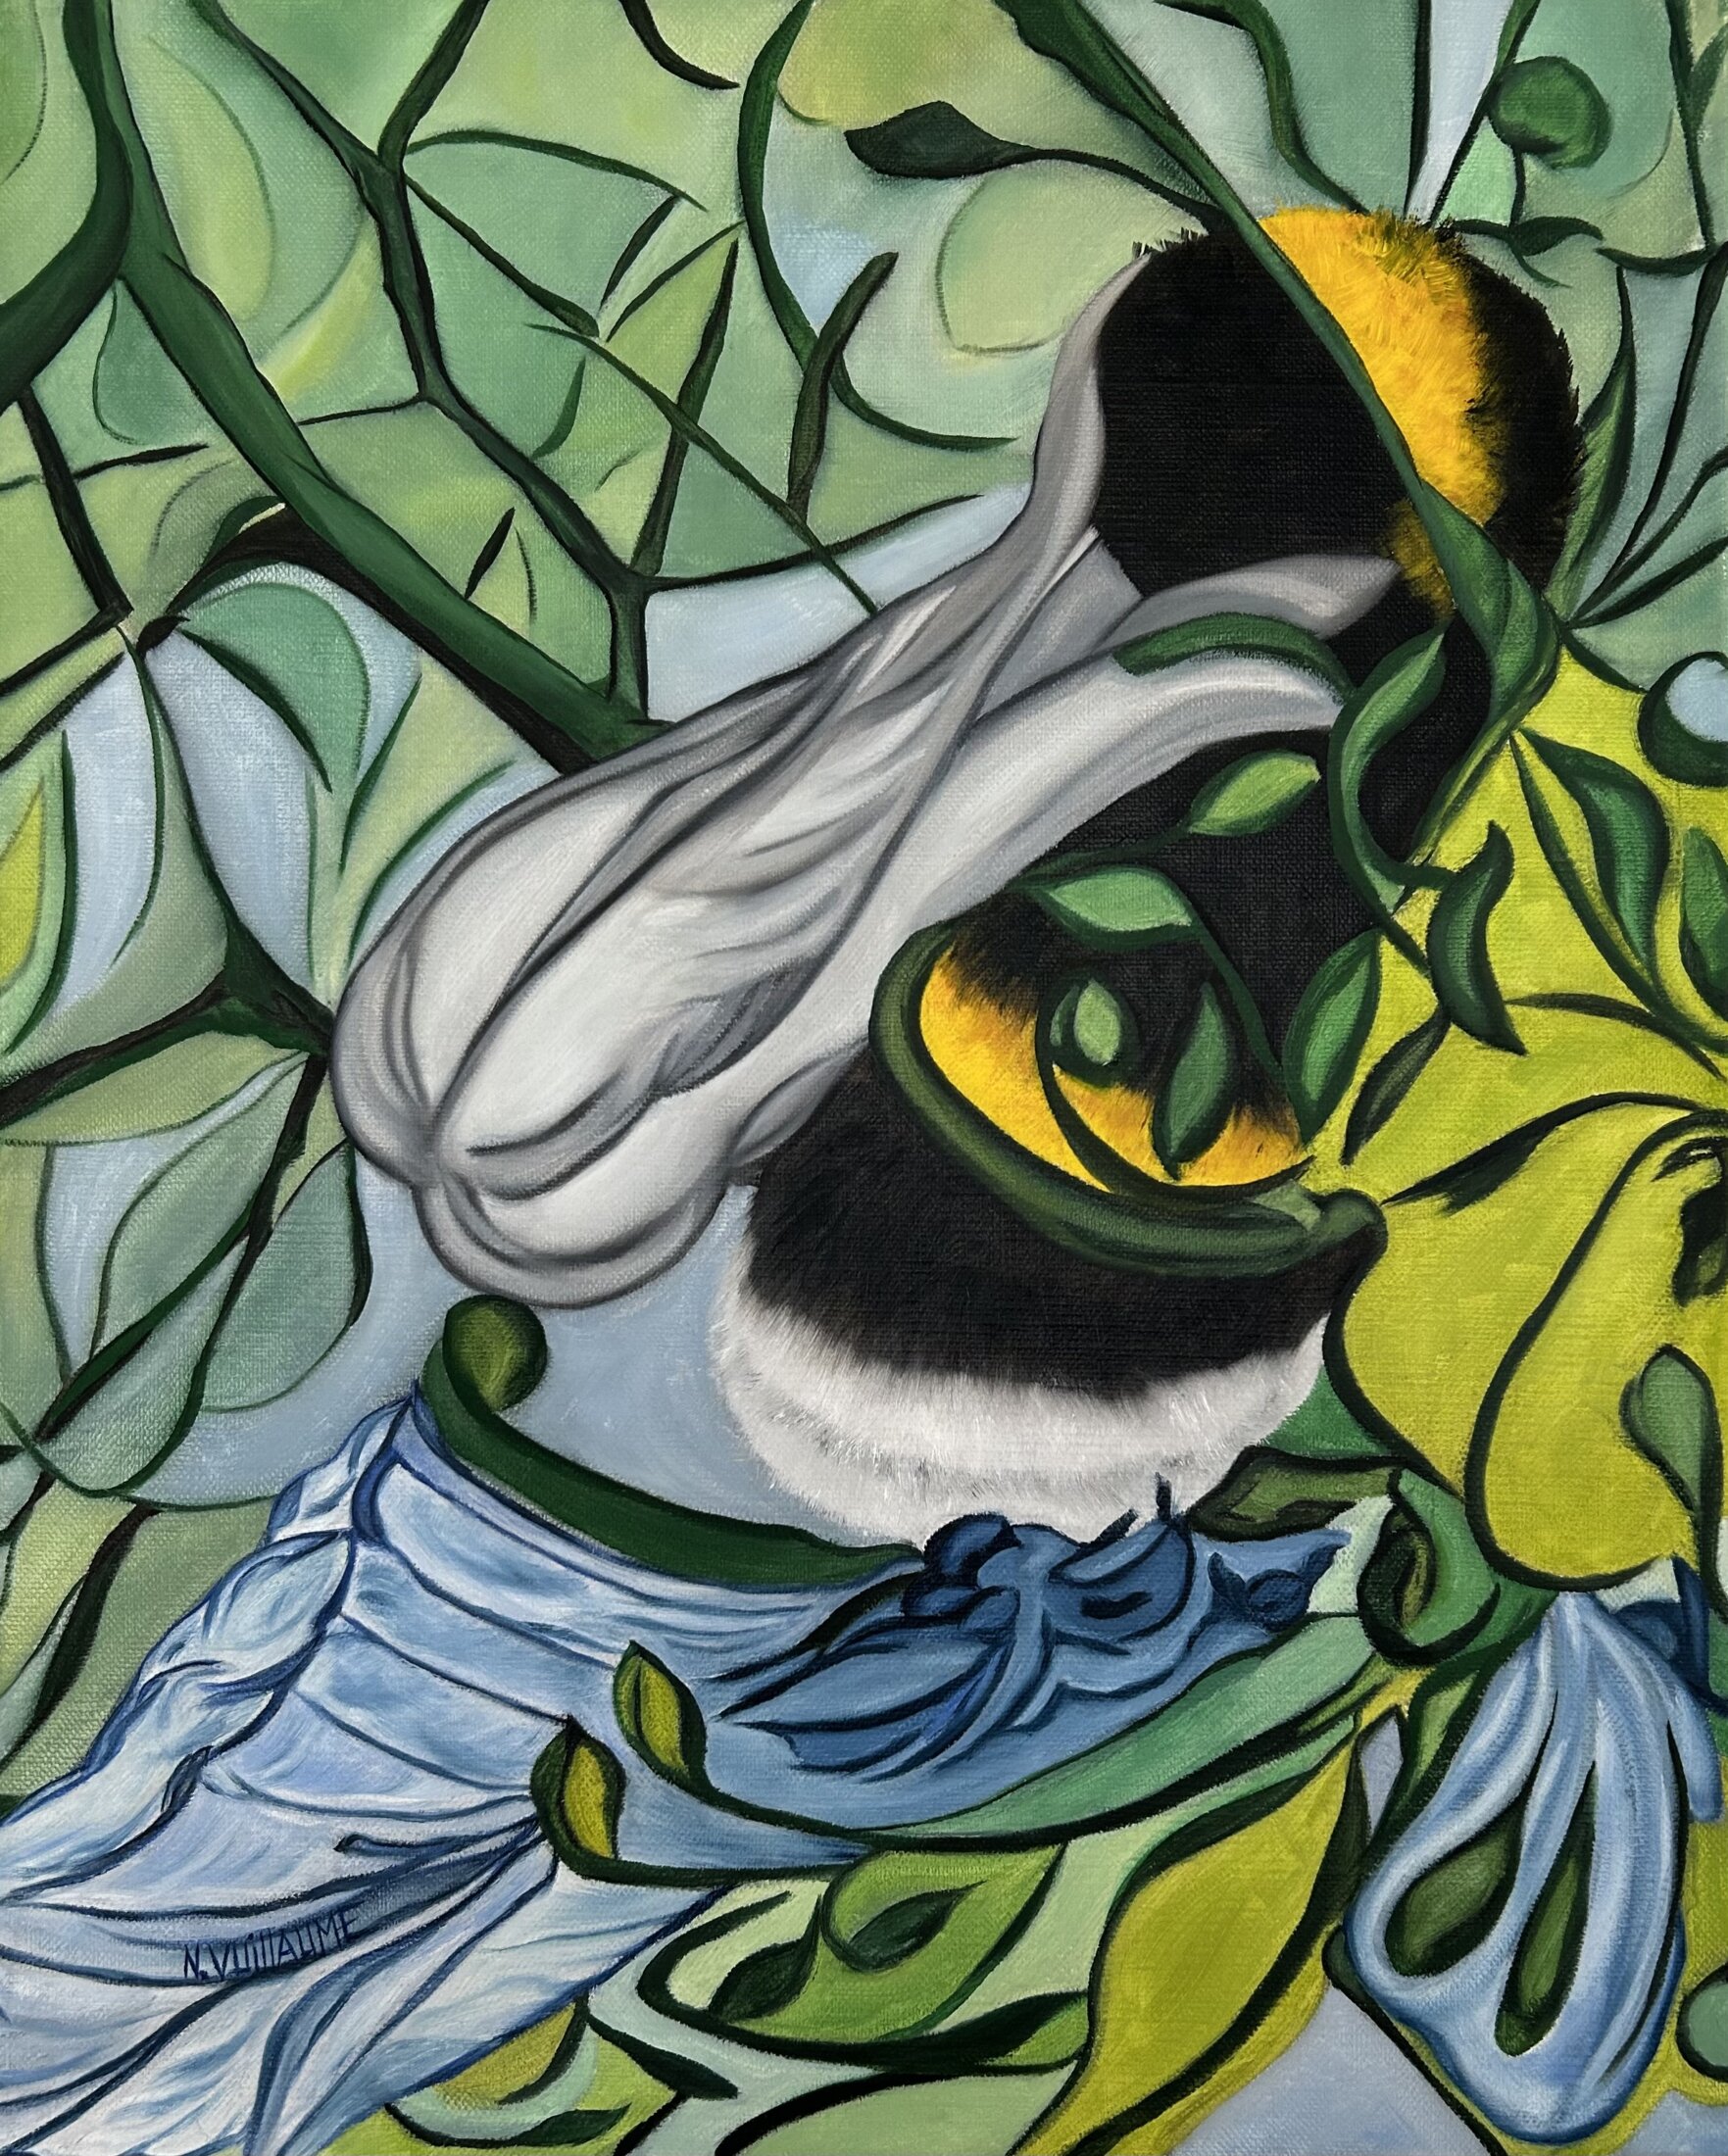 Pollinisation, de l’artiste peintre Nadia Vuillaume, est un petit tableau tout en transparence, traité tel un vitrail.